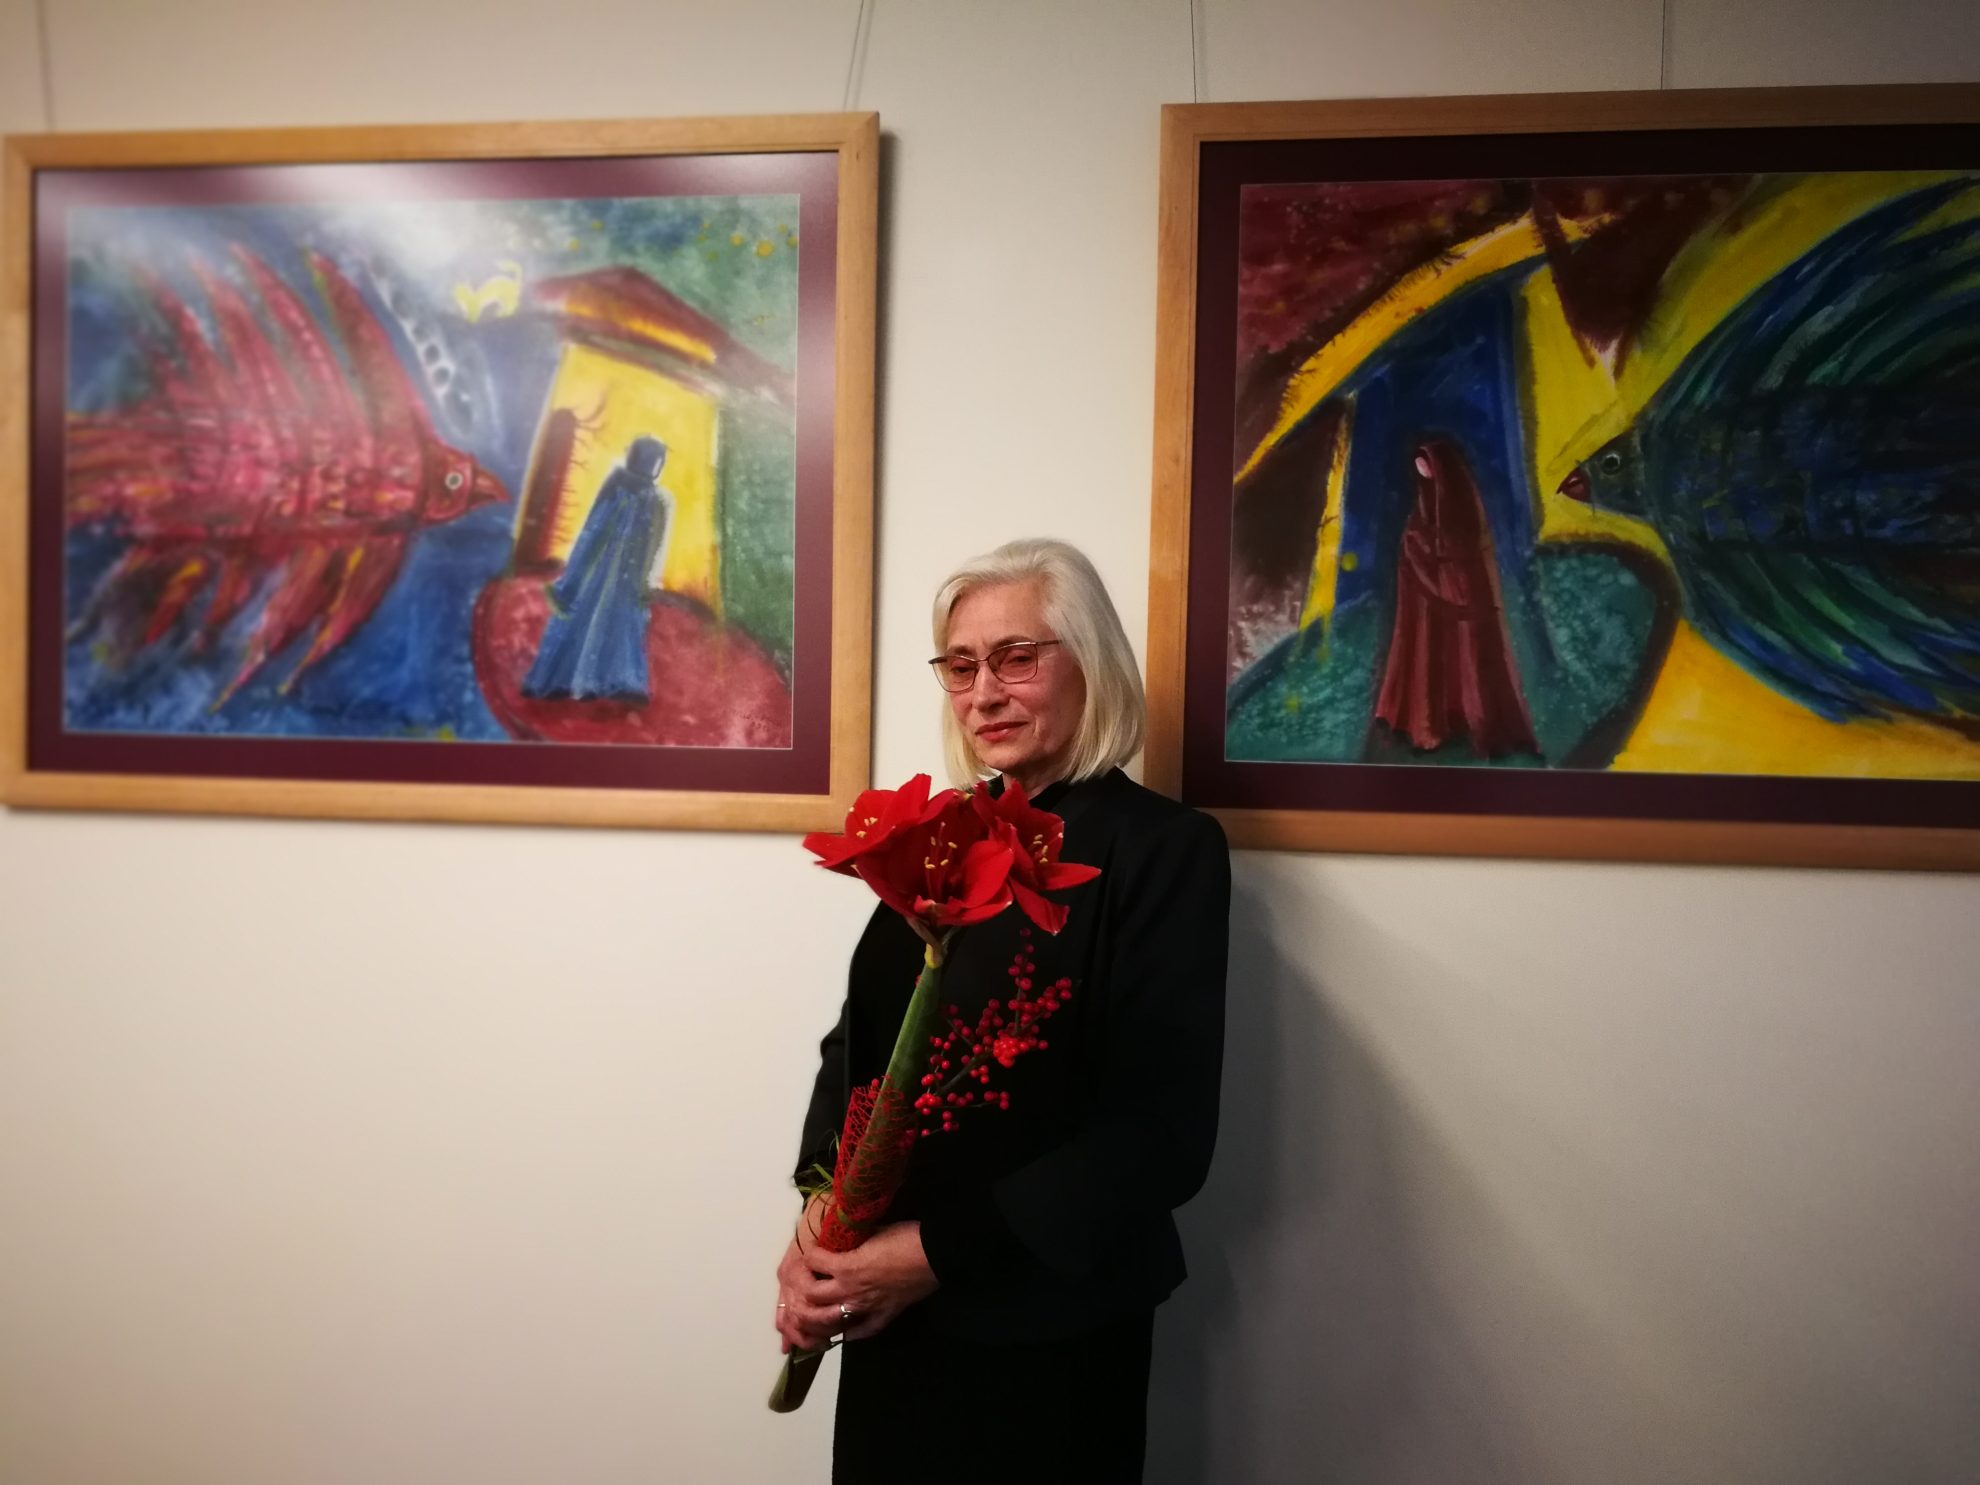 Panevėžo apygardos prokuratūra didžiąsias metų šventes pasitiks pasipuošusi panevėžietės dailininkės Irenos Milaševičiūtės-Paulavičienės paveikslais. Prokuratūroje atidaryta šios dailininkės darbų paroda.